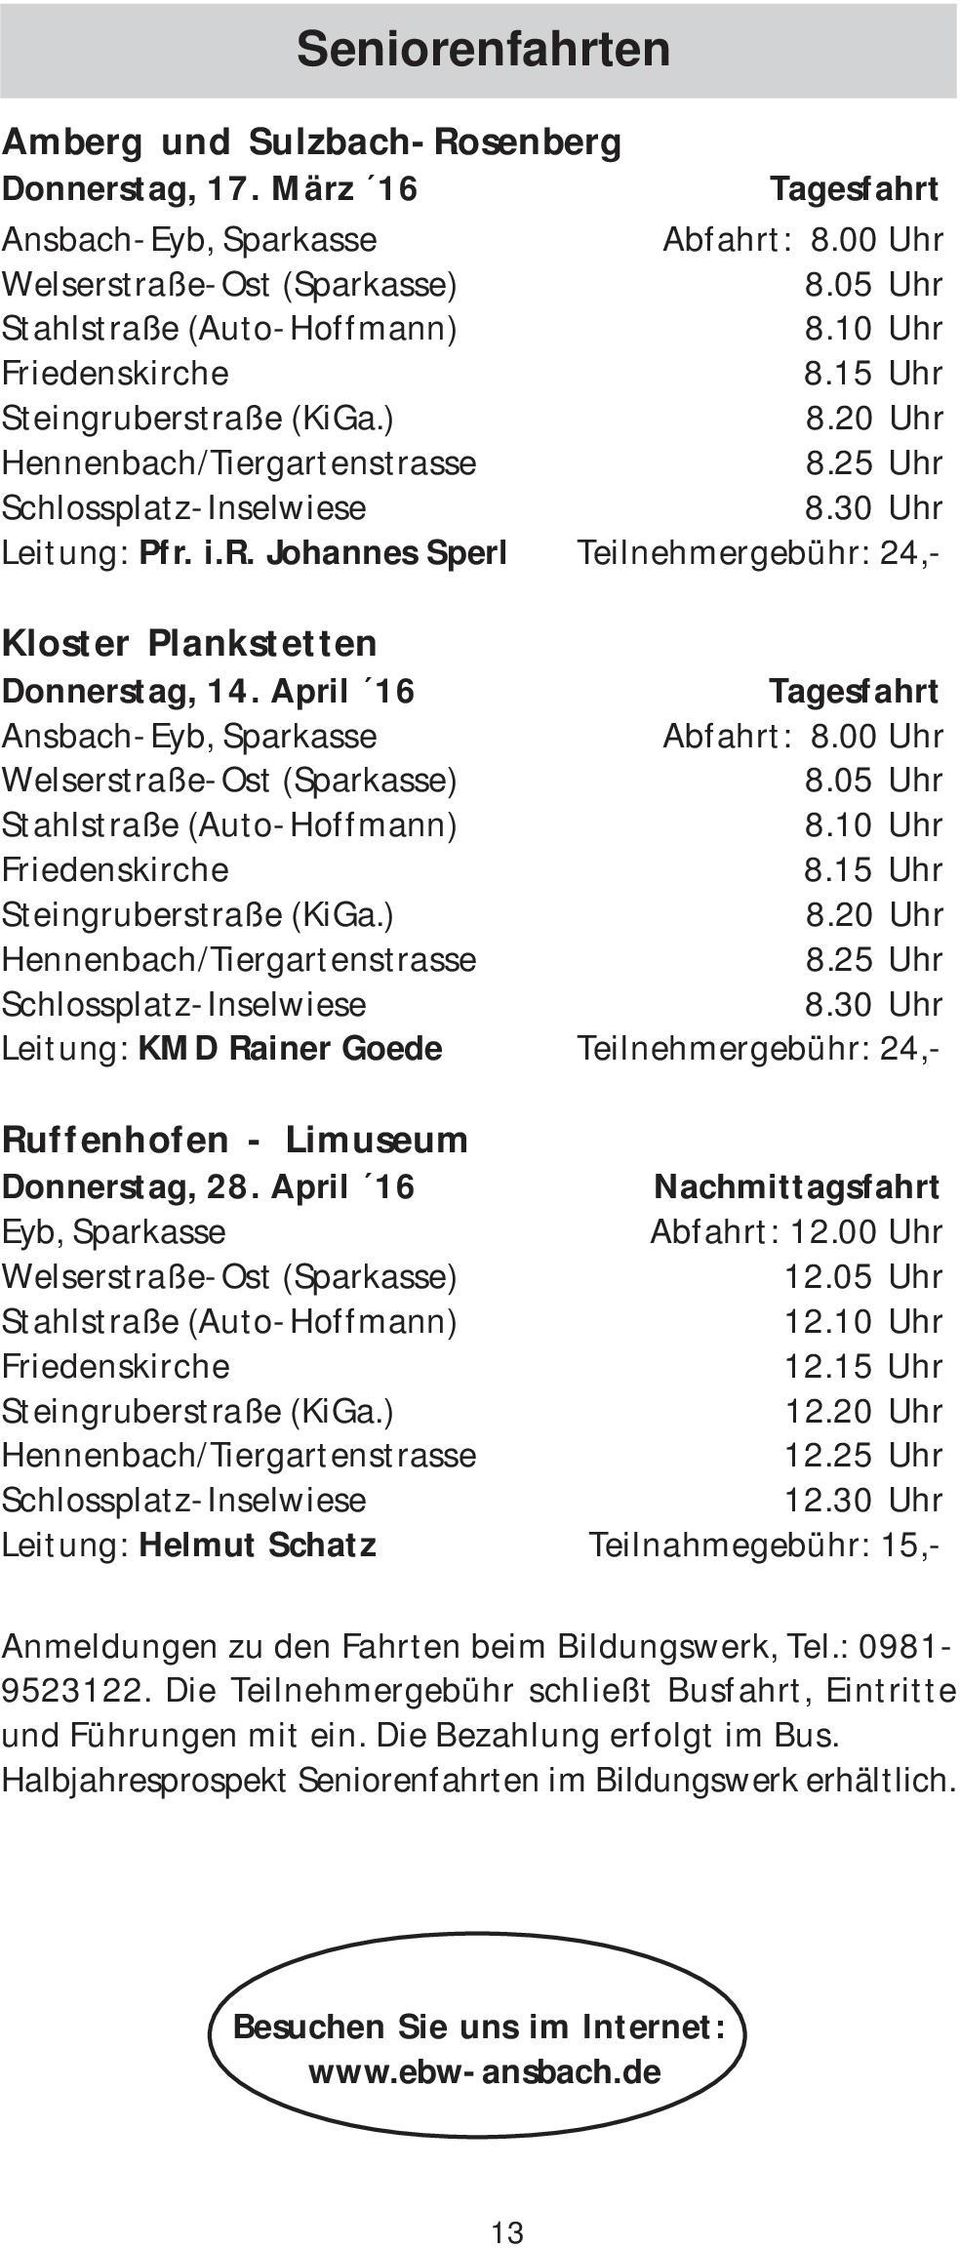 April 16 Tagesfahrt Ansbach-Eyb, Sparkasse Abfahrt: 8.00 Uhr Welserstraße-Ost (Sparkasse) 8.05 Uhr Stahlstraße (Auto-Hoffmann) 8.10 Uhr Friedenskirche 8.15 Uhr Steingruberstraße (KiGa.) 8.20 Uhr Hennenbach/Tiergartenstrasse 8.